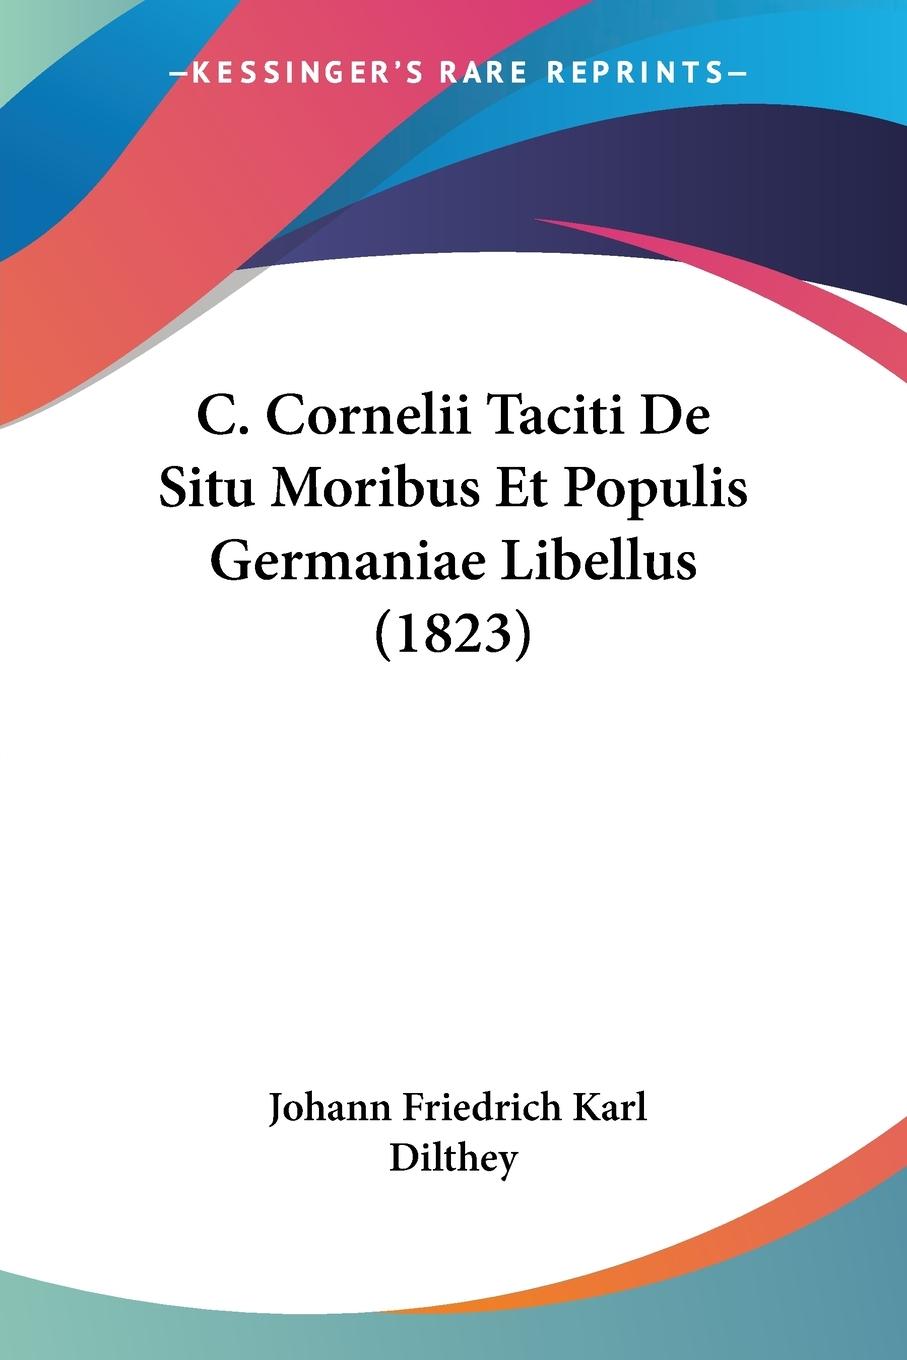 C. Cornelii Taciti De Situ Moribus Et Populis Germaniae Libellus (1823) - Dilthey, Johann Friedrich Karl